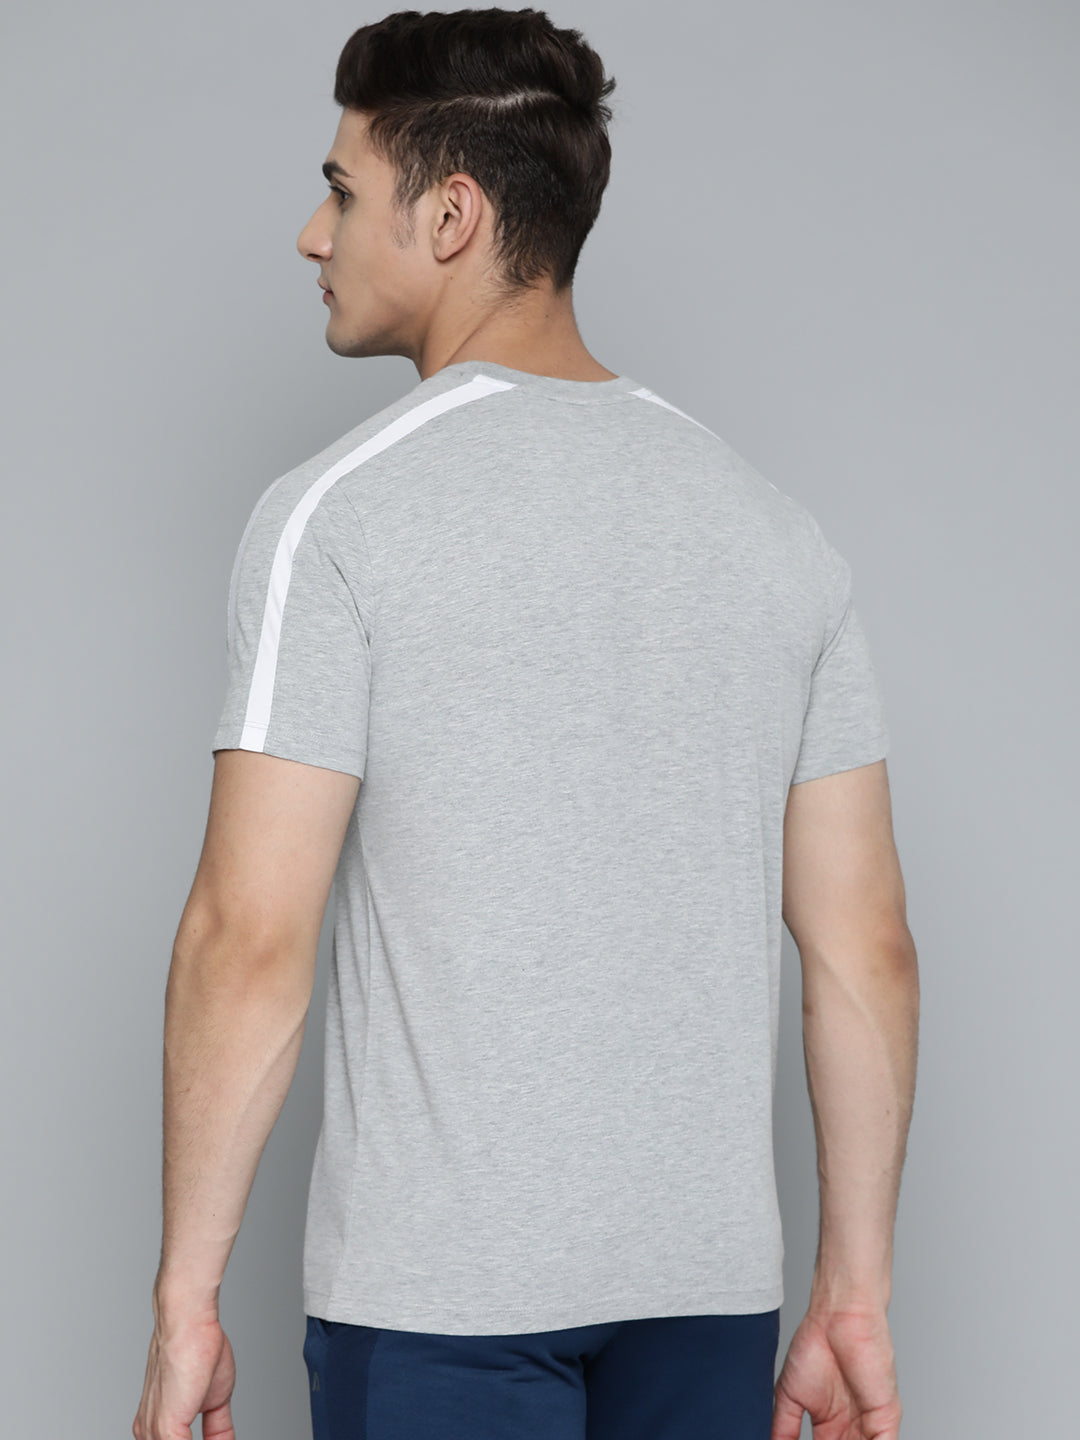 Alcis Men Grey Melange Pocket Detailing T-shirt